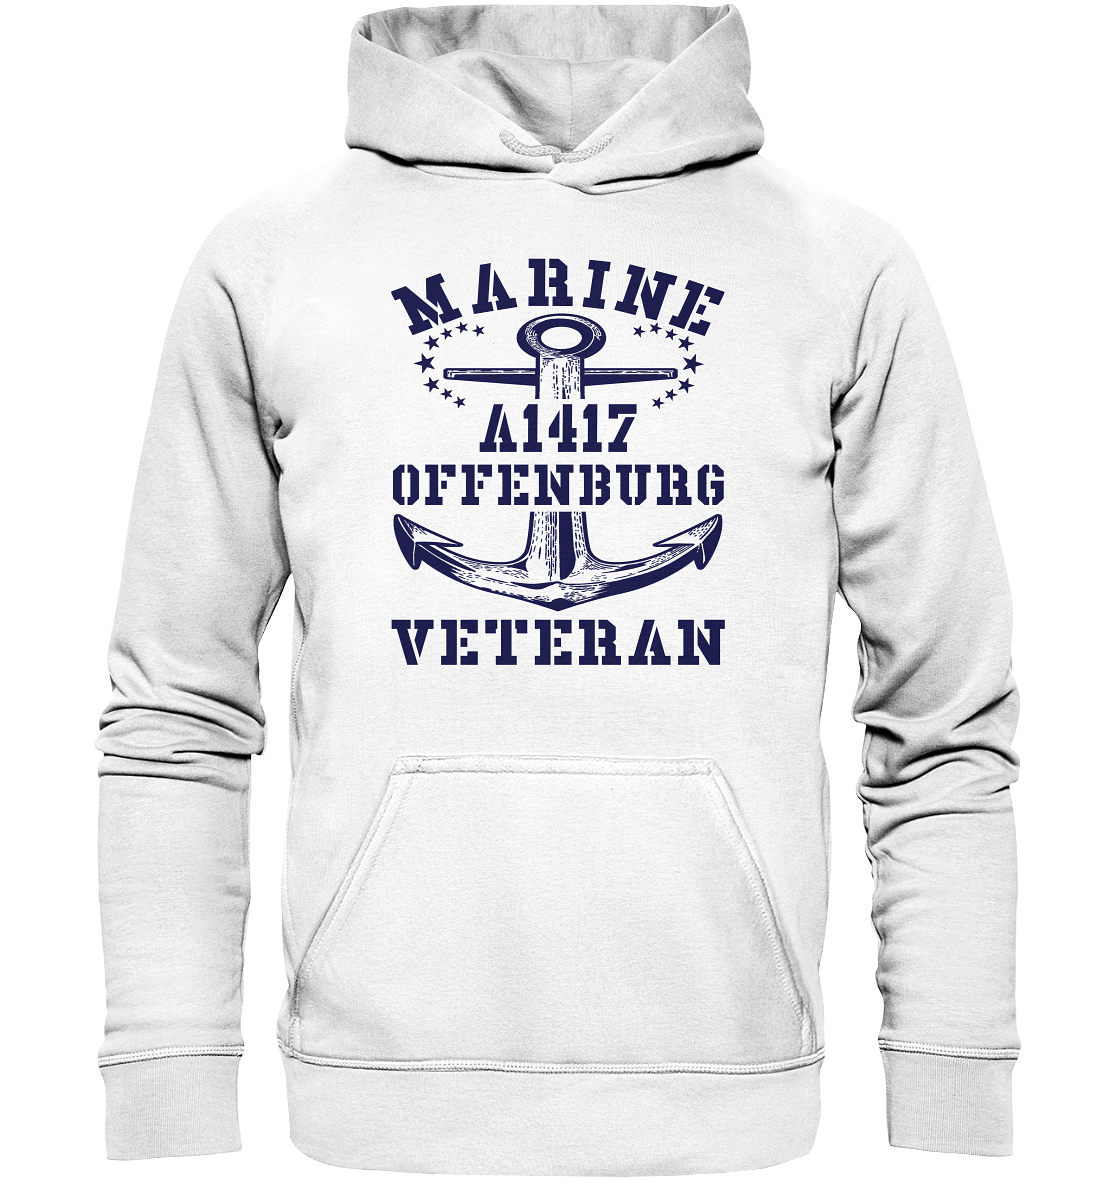 Troßschiff A1417 OFFENBURG Marine Veteran - Basic Unisex Hoodie